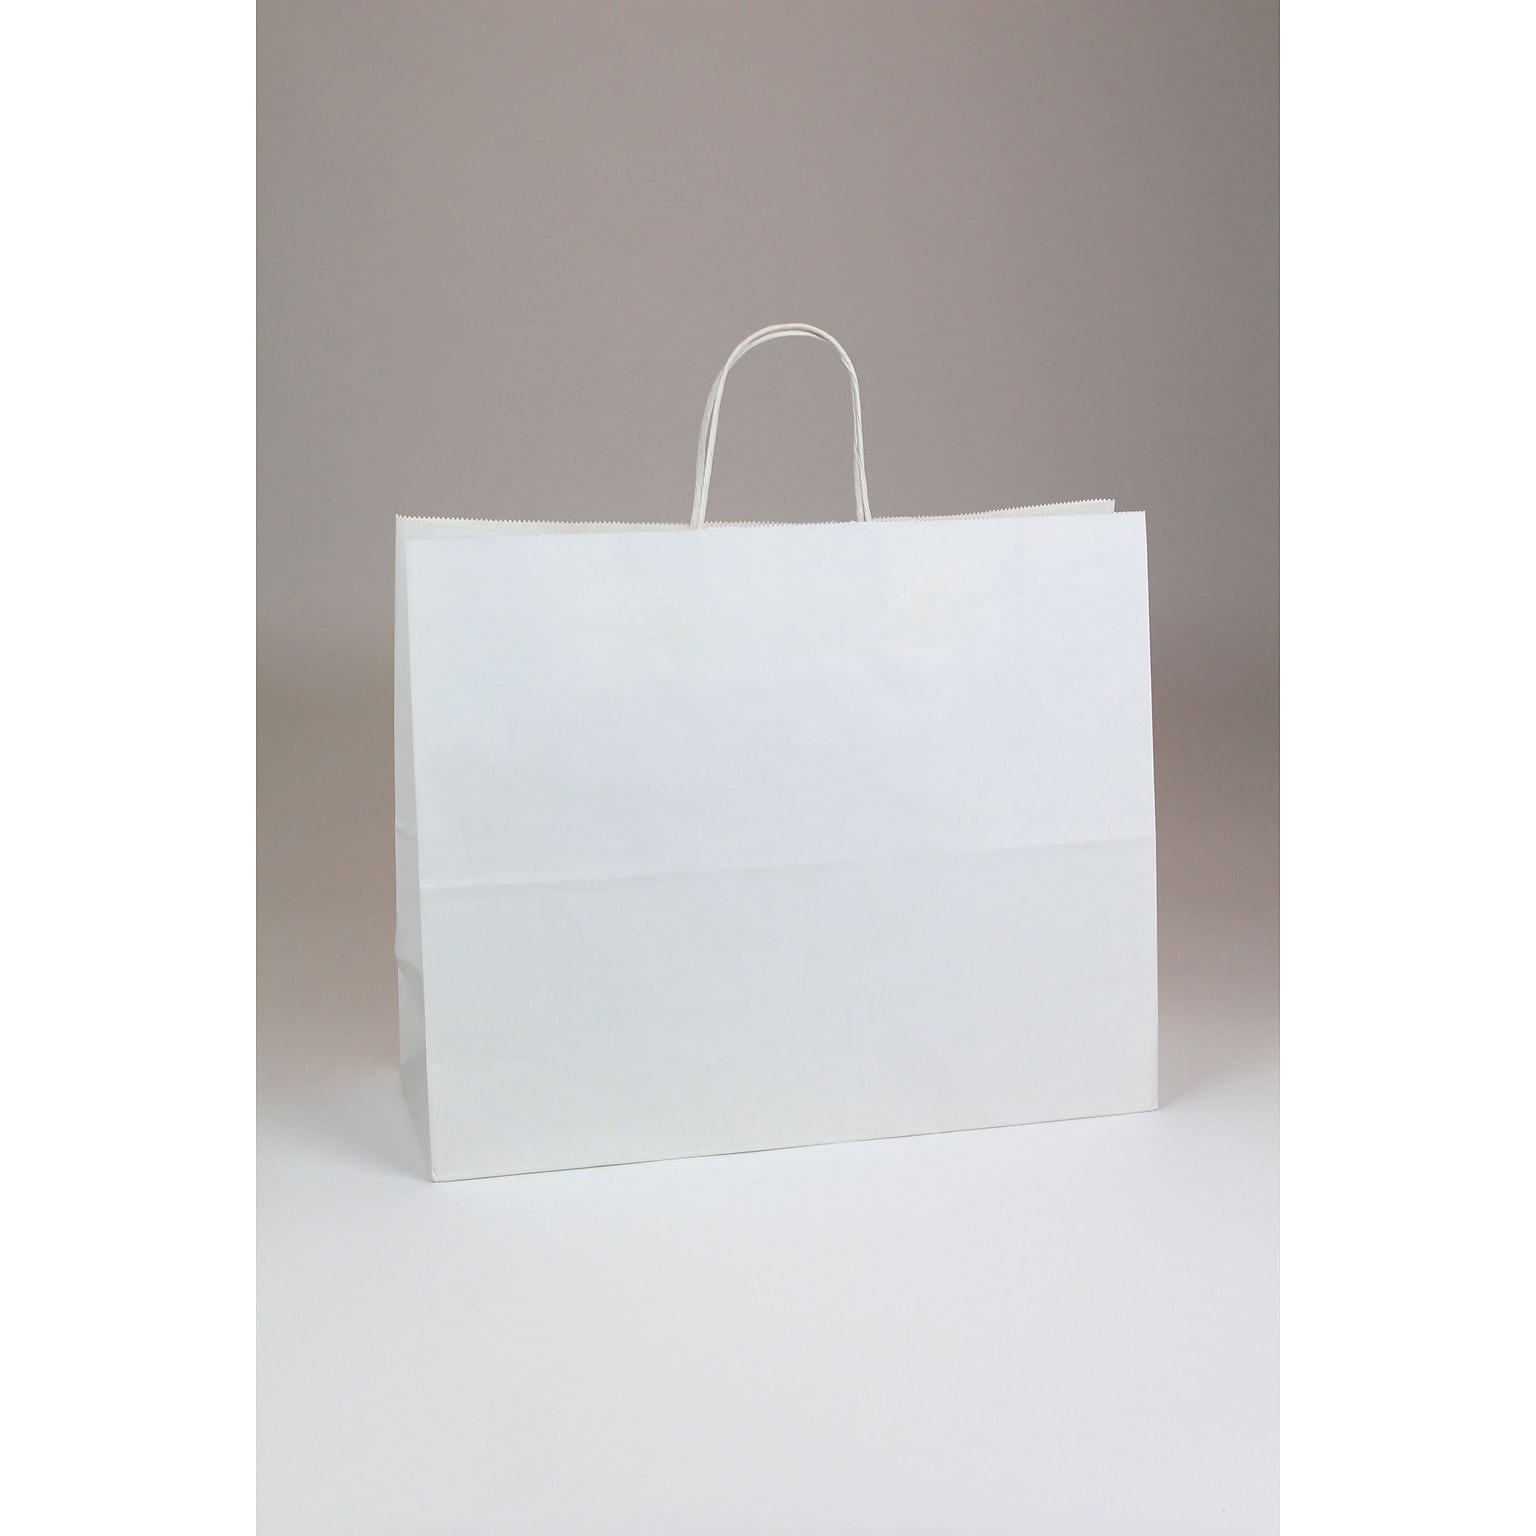 Vouge Shopper 13 x 16 x 6 Kraft Paper Shopping Bags, White, 250/Carton (WHITE16613)